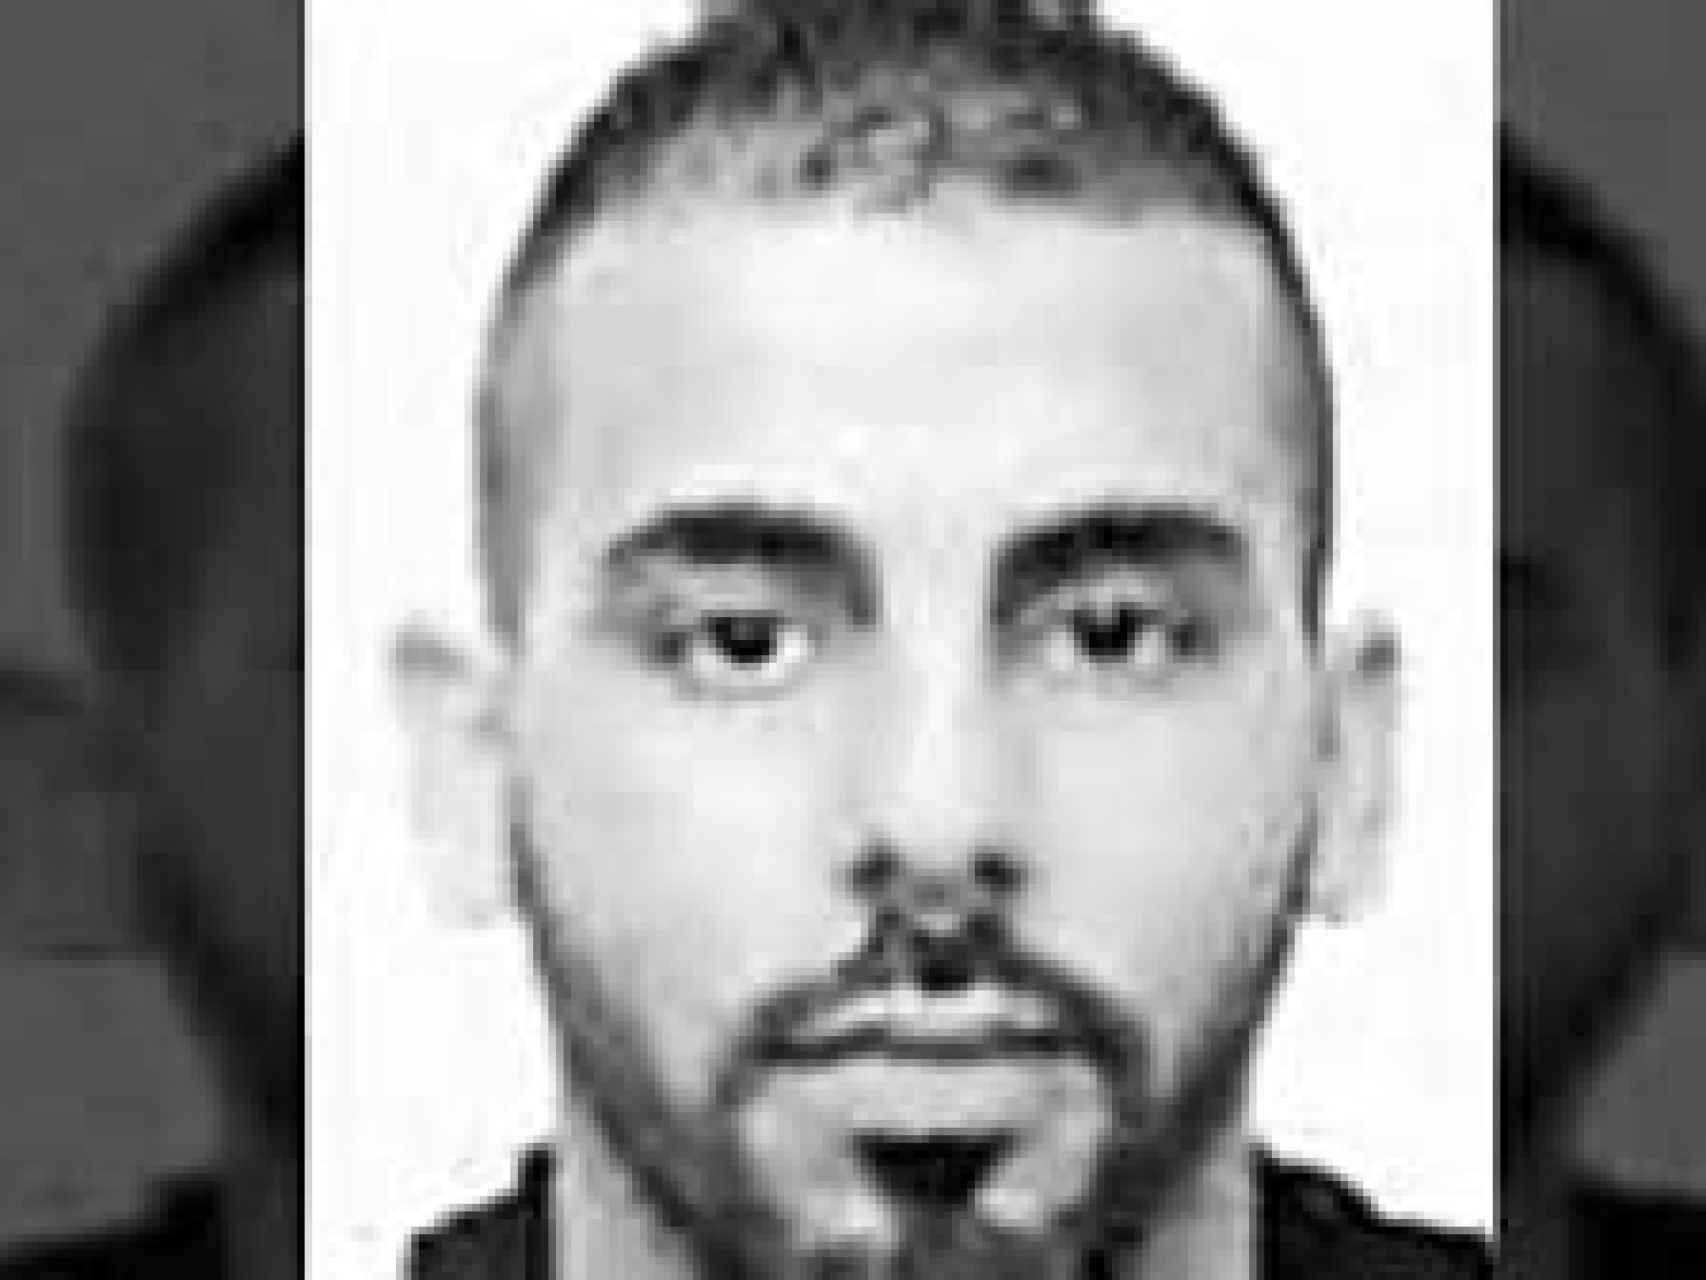 Taib Abdelouahab, de 29 años, es el agresor de la comisaría de Cornellà.